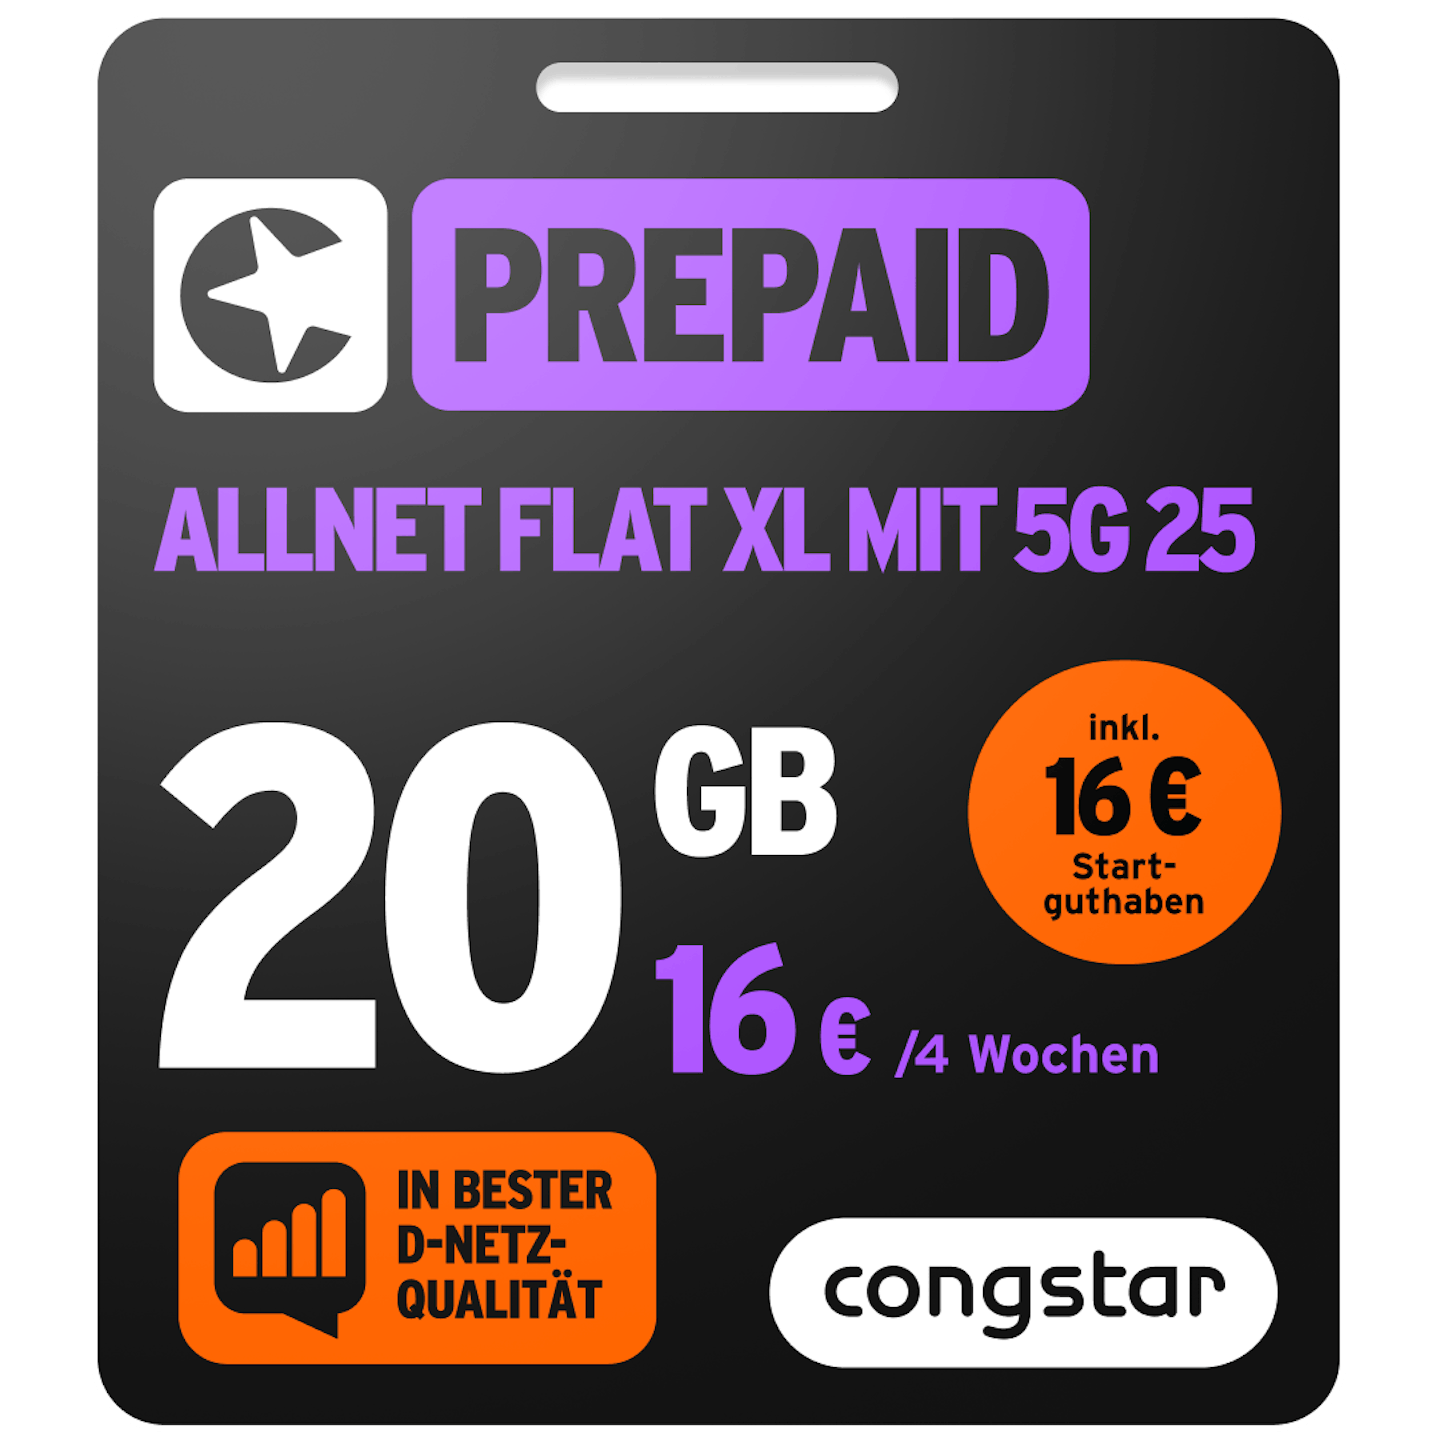 Bild der Verpackung des Prepaid Allnet XL mit 5G 25